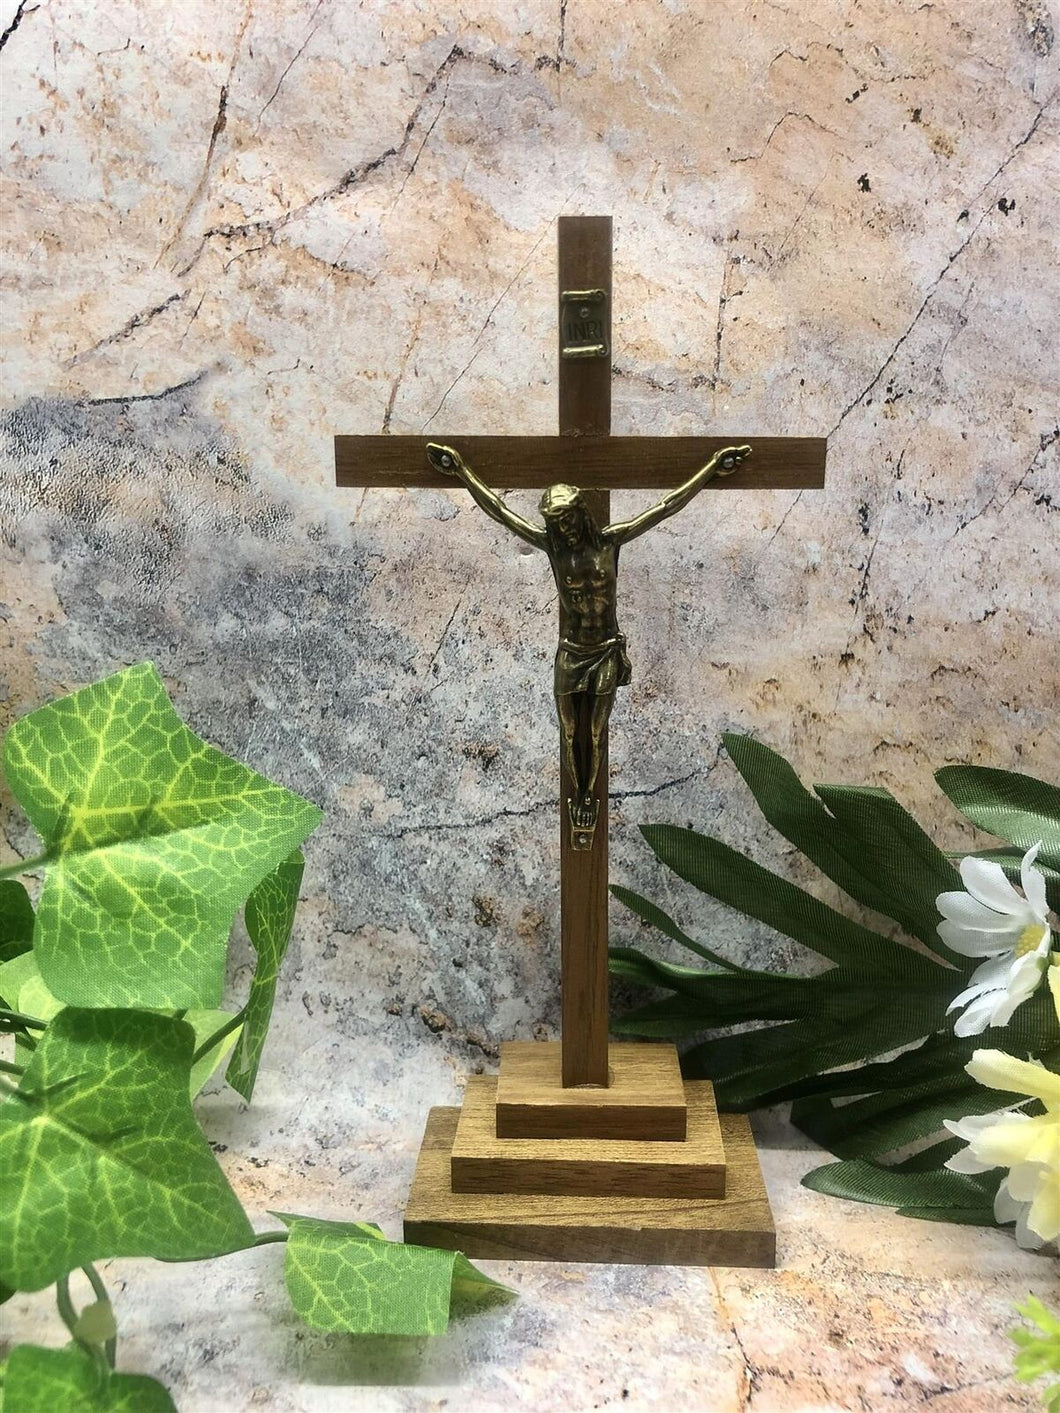 Wooden Freestanding Crucifix Cross Brass Corpus Religious Ornament